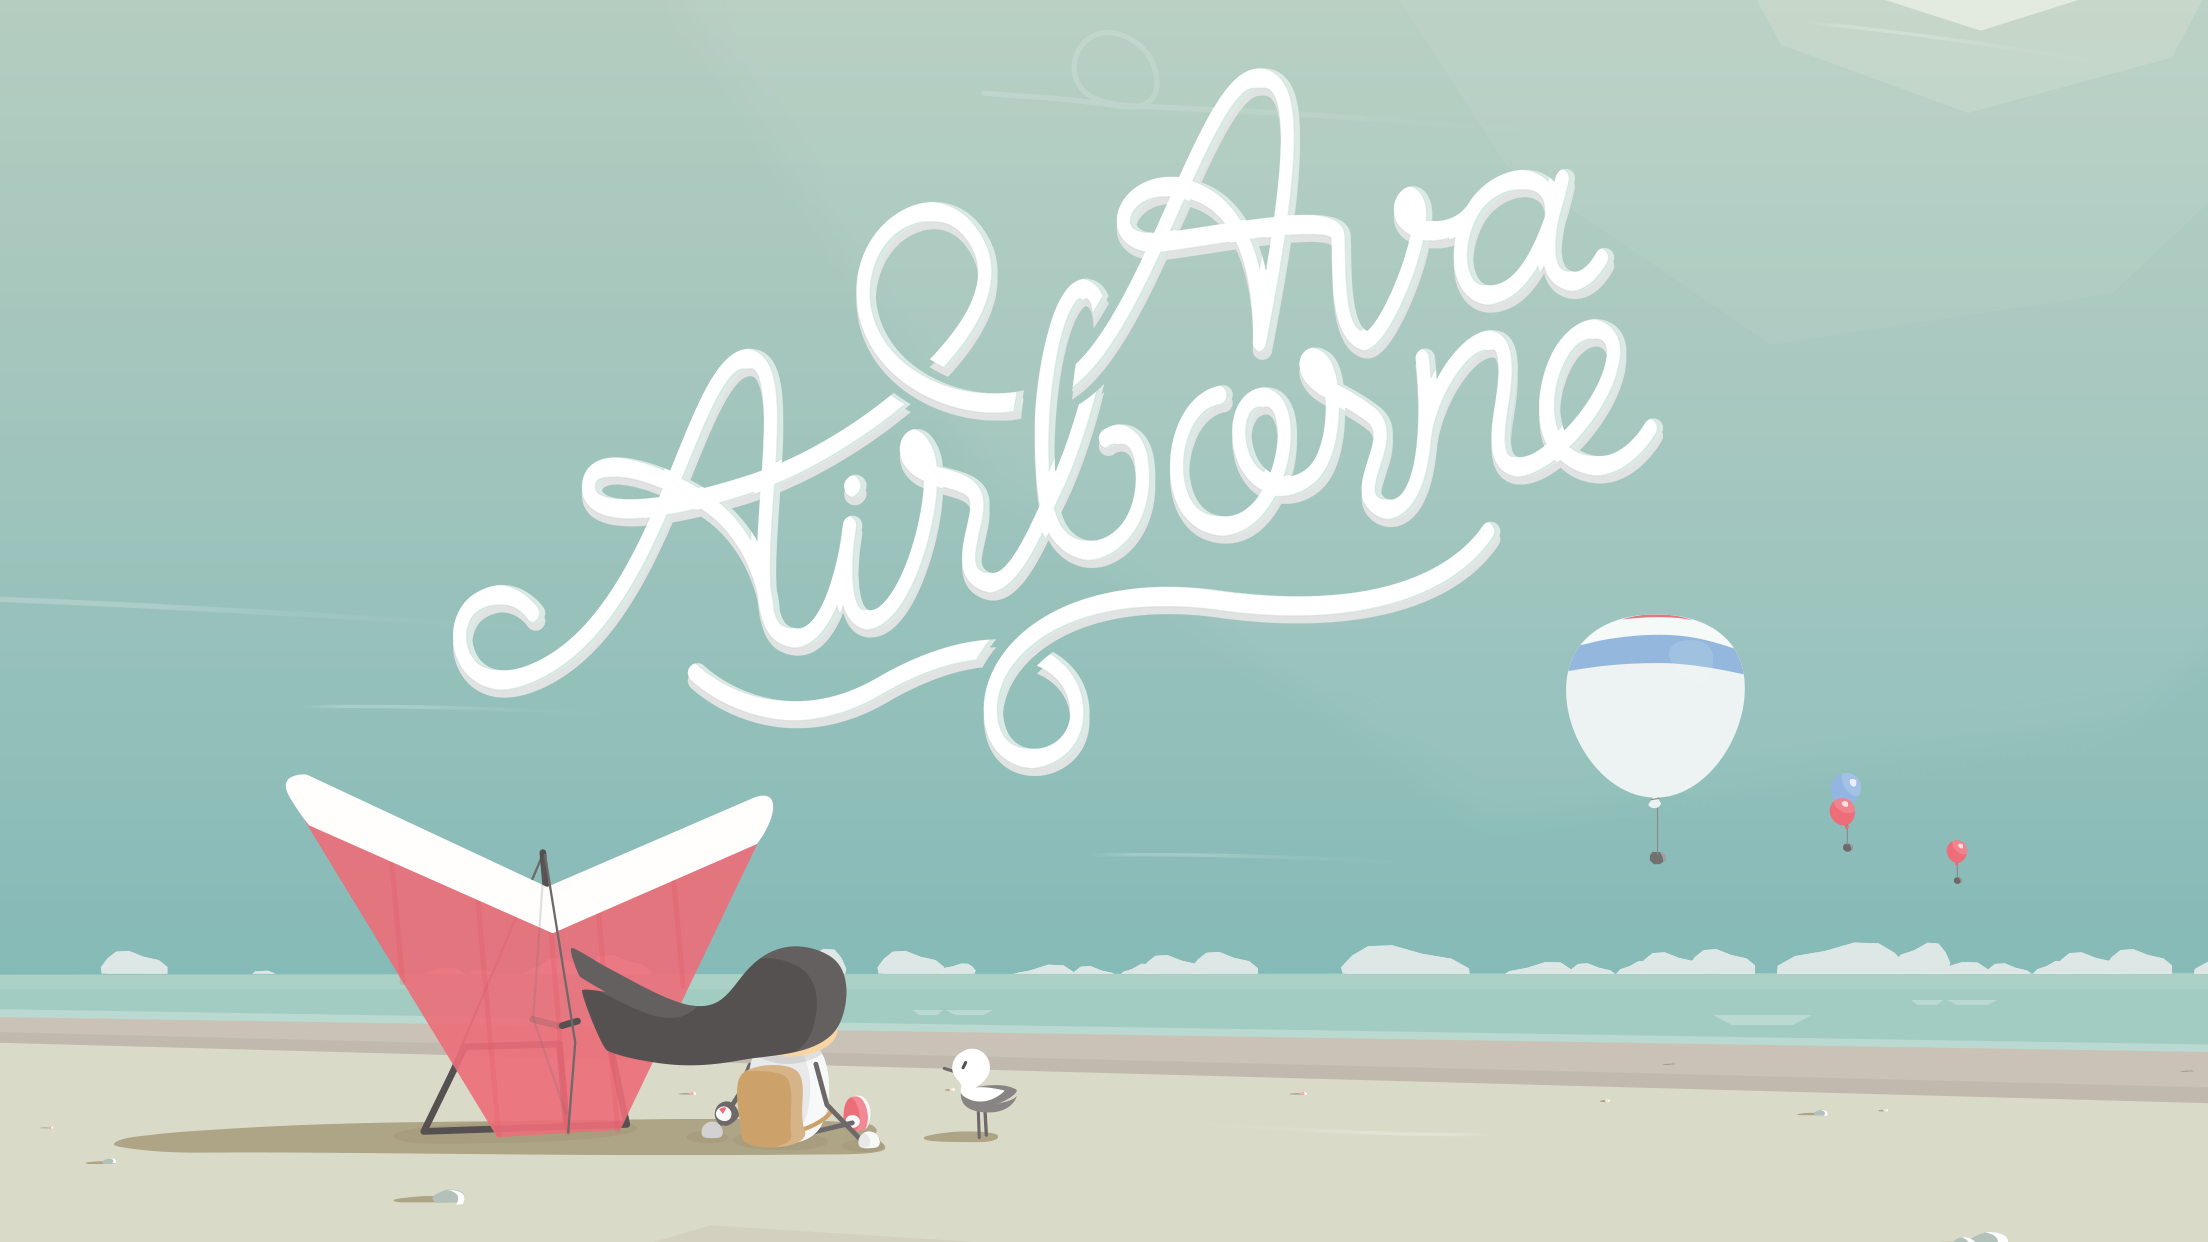 Screenshot 1 of Ava Airborne 514